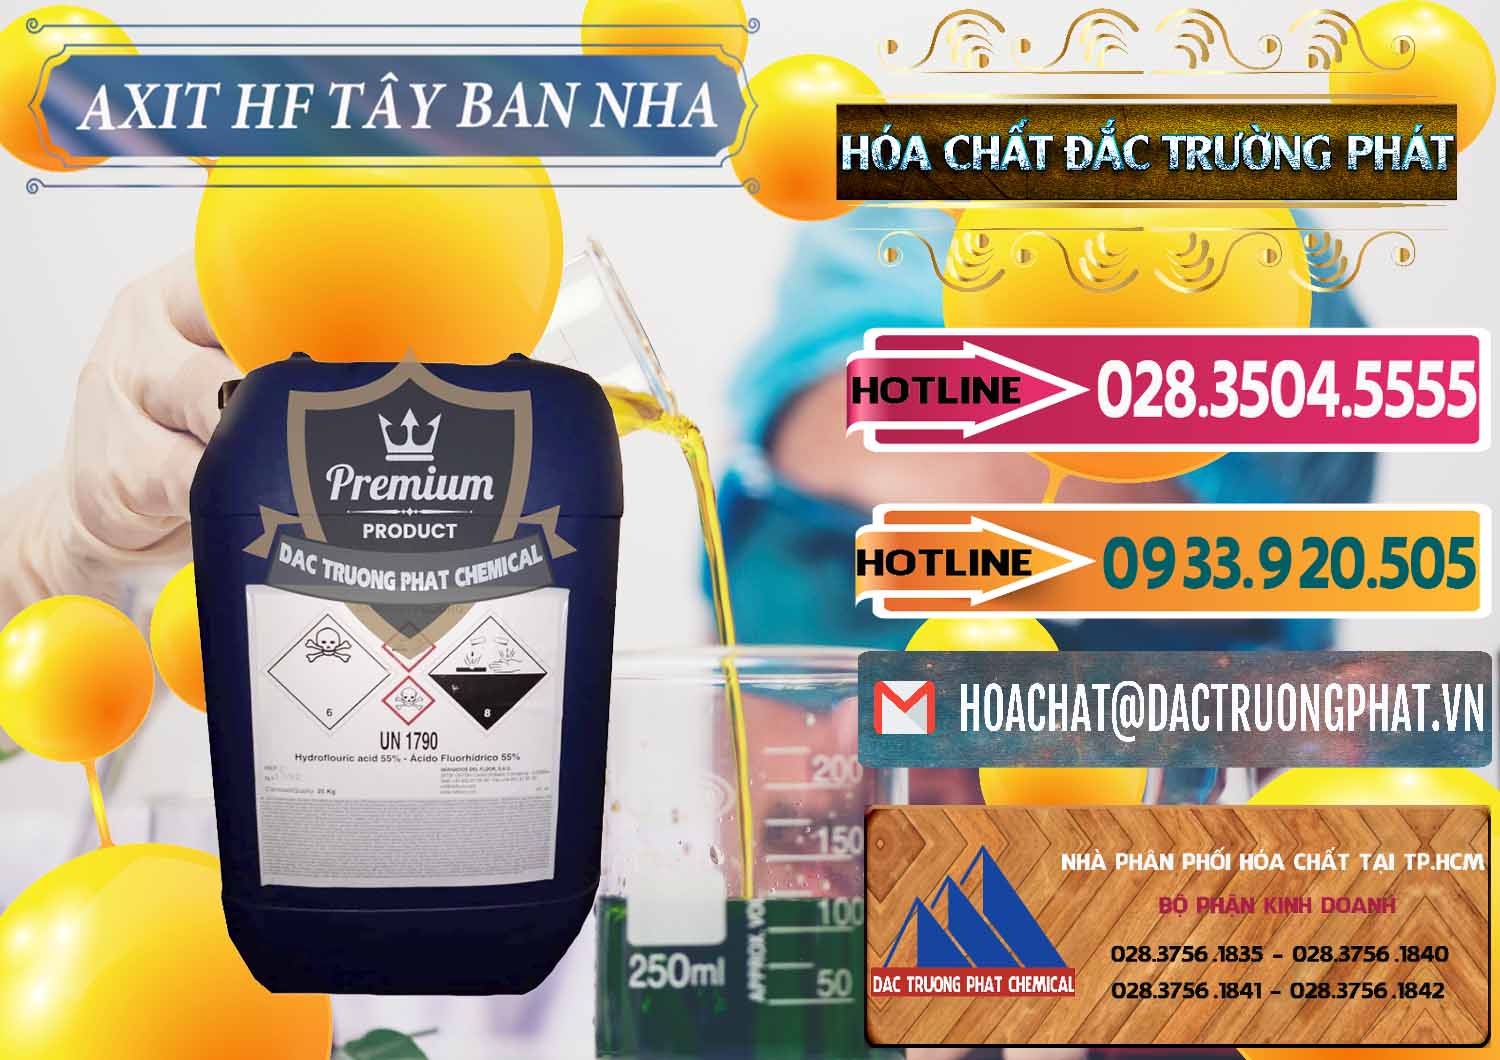 Cty chuyên nhập khẩu _ bán Axit HF - Acid HF 55% Tây Ban Nha Spain - 0404 - Công ty kinh doanh ( phân phối ) hóa chất tại TP.HCM - dactruongphat.vn